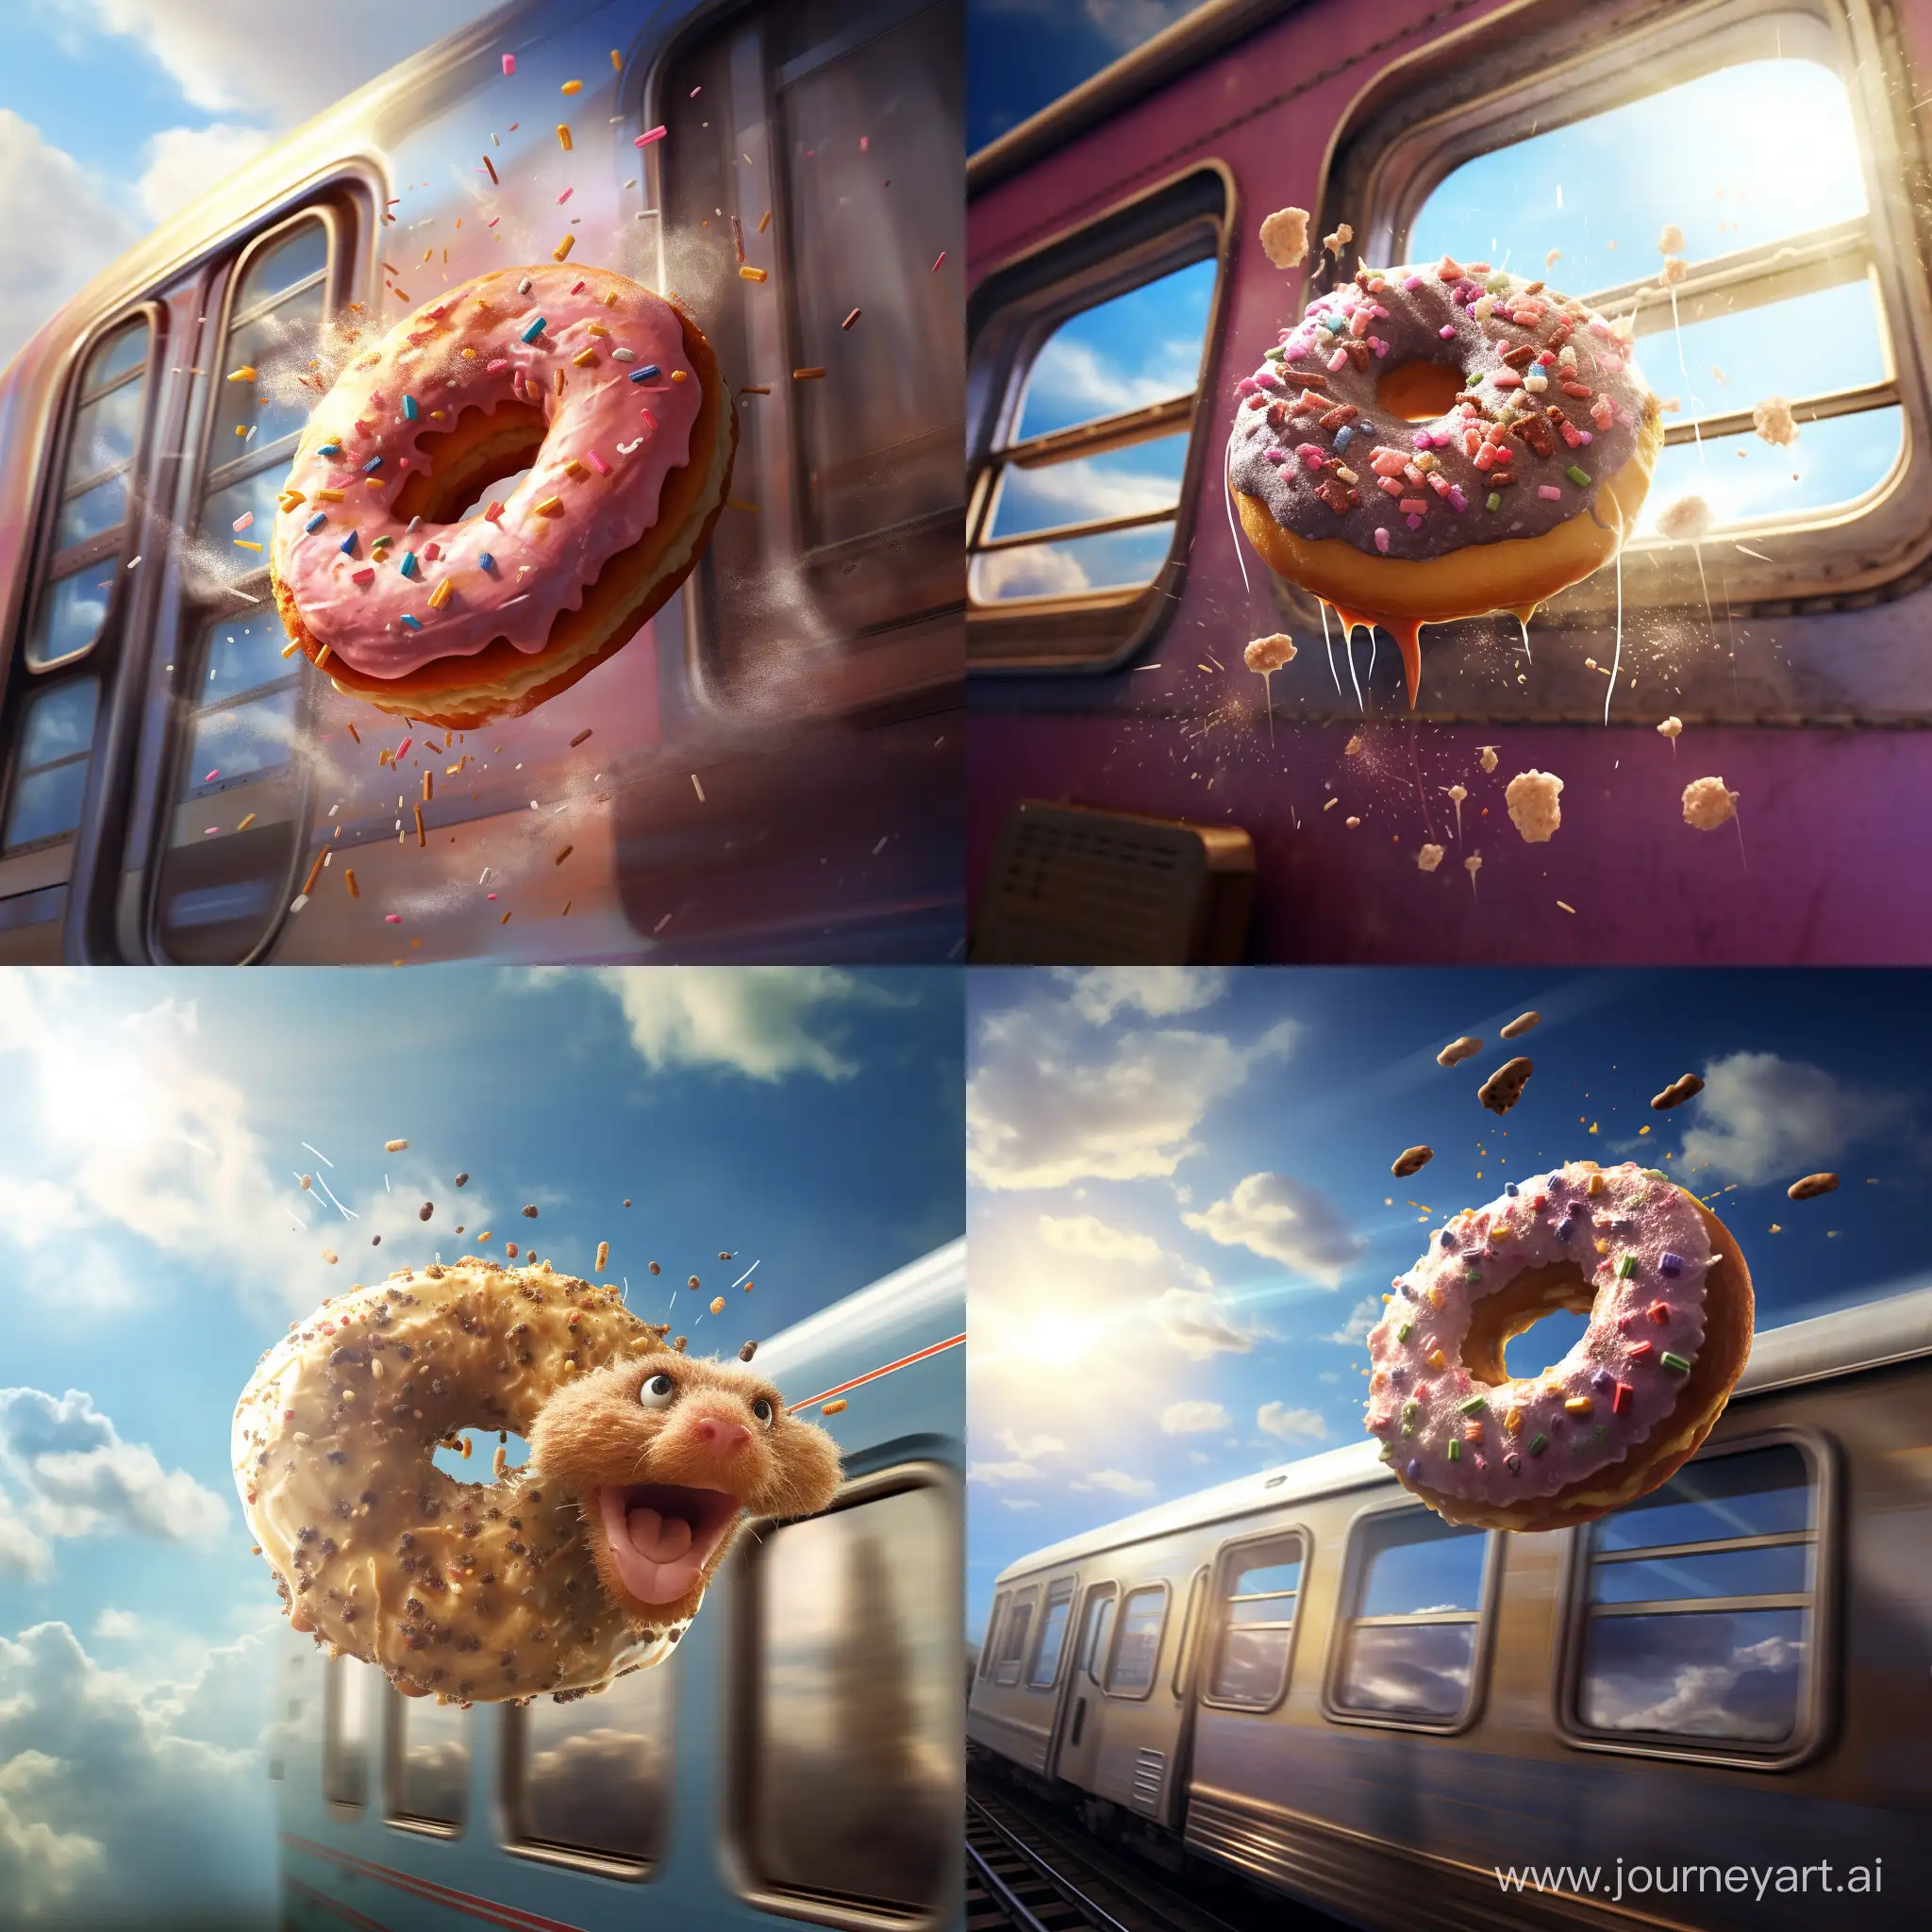 Flying-Donut-Scene-from-Train-Window